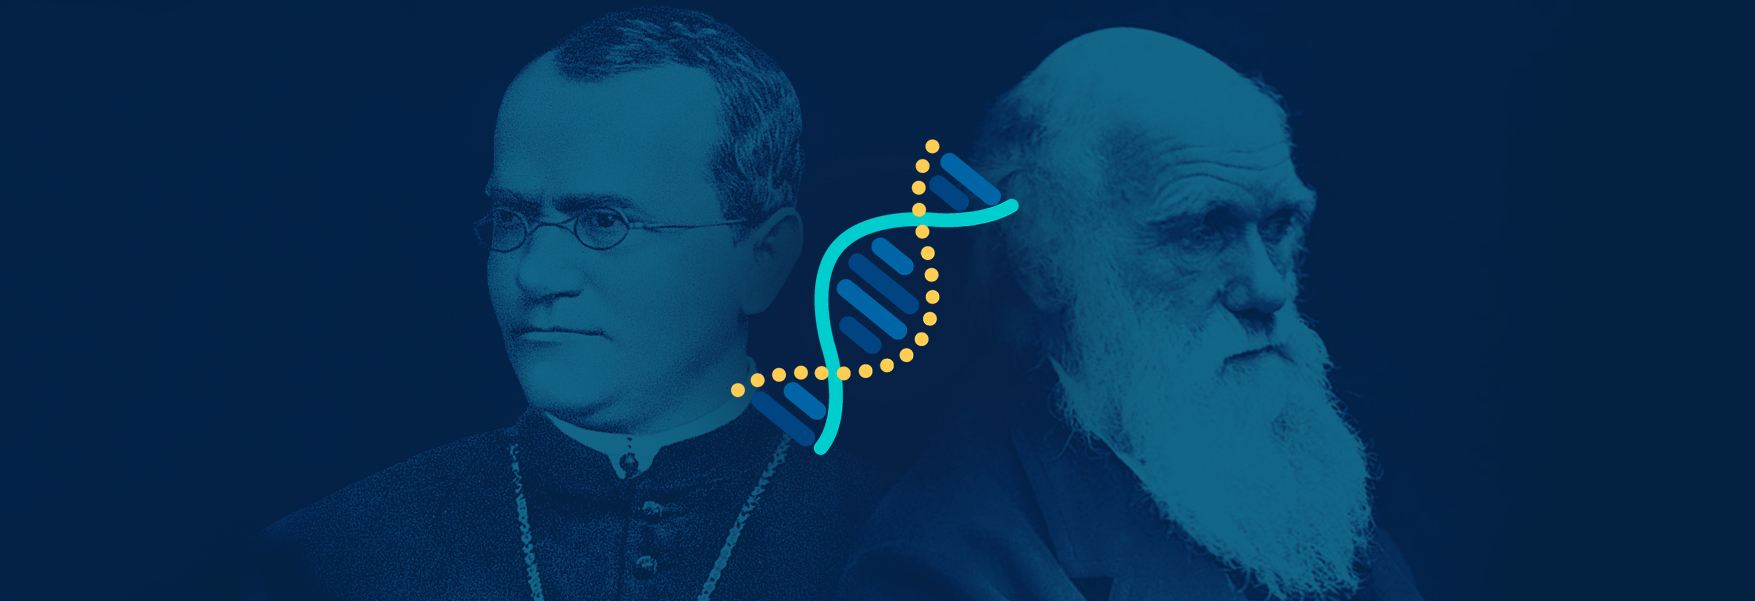 Mendel versus Darwin: A clash of titans